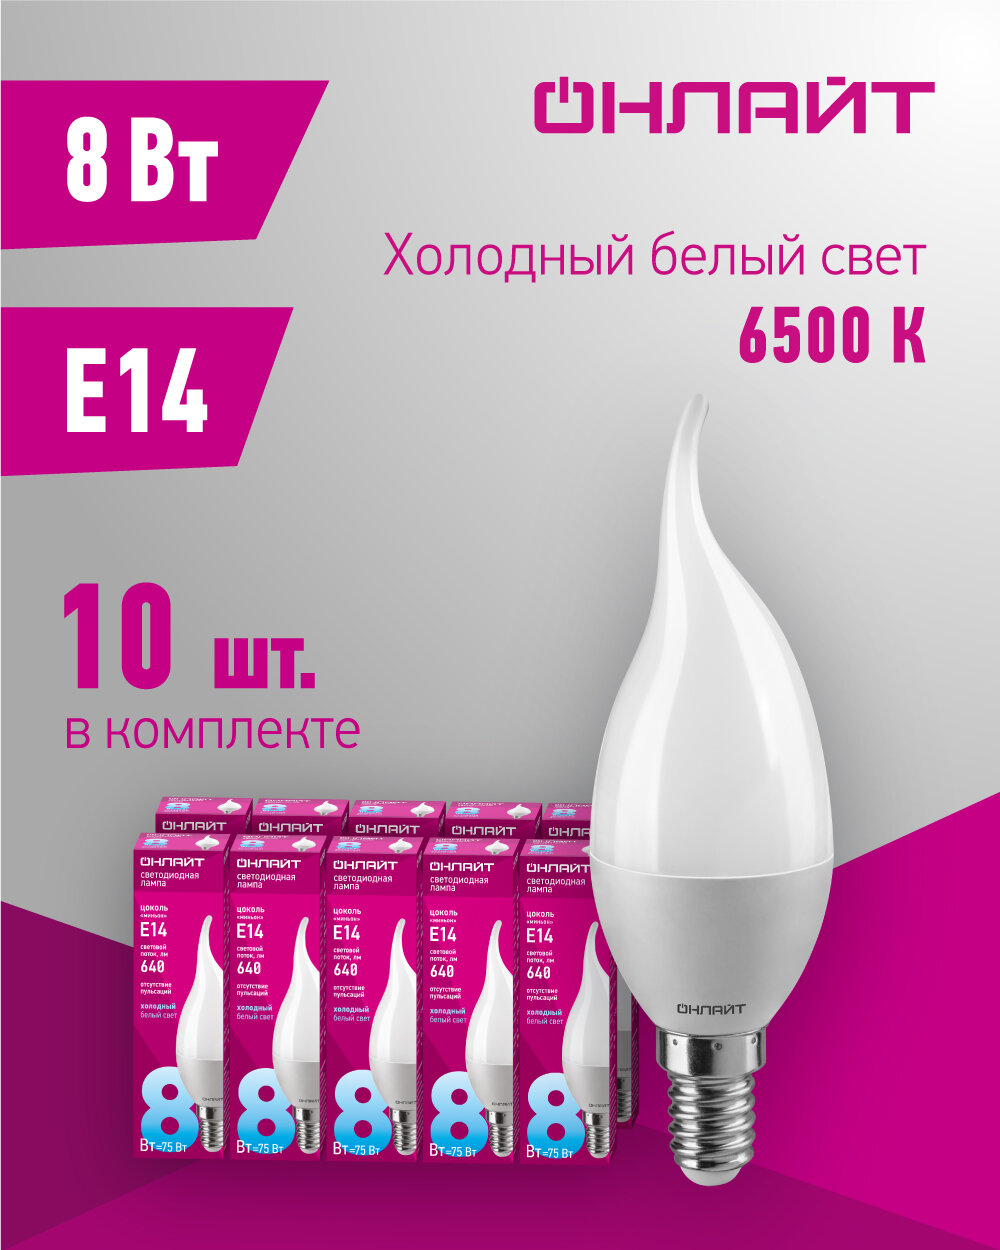 Лампа светодиодная онлайт 61 196, свеча на ветру, 8 Вт, Е14, холодного света 6500К, упаковка 10 шт.